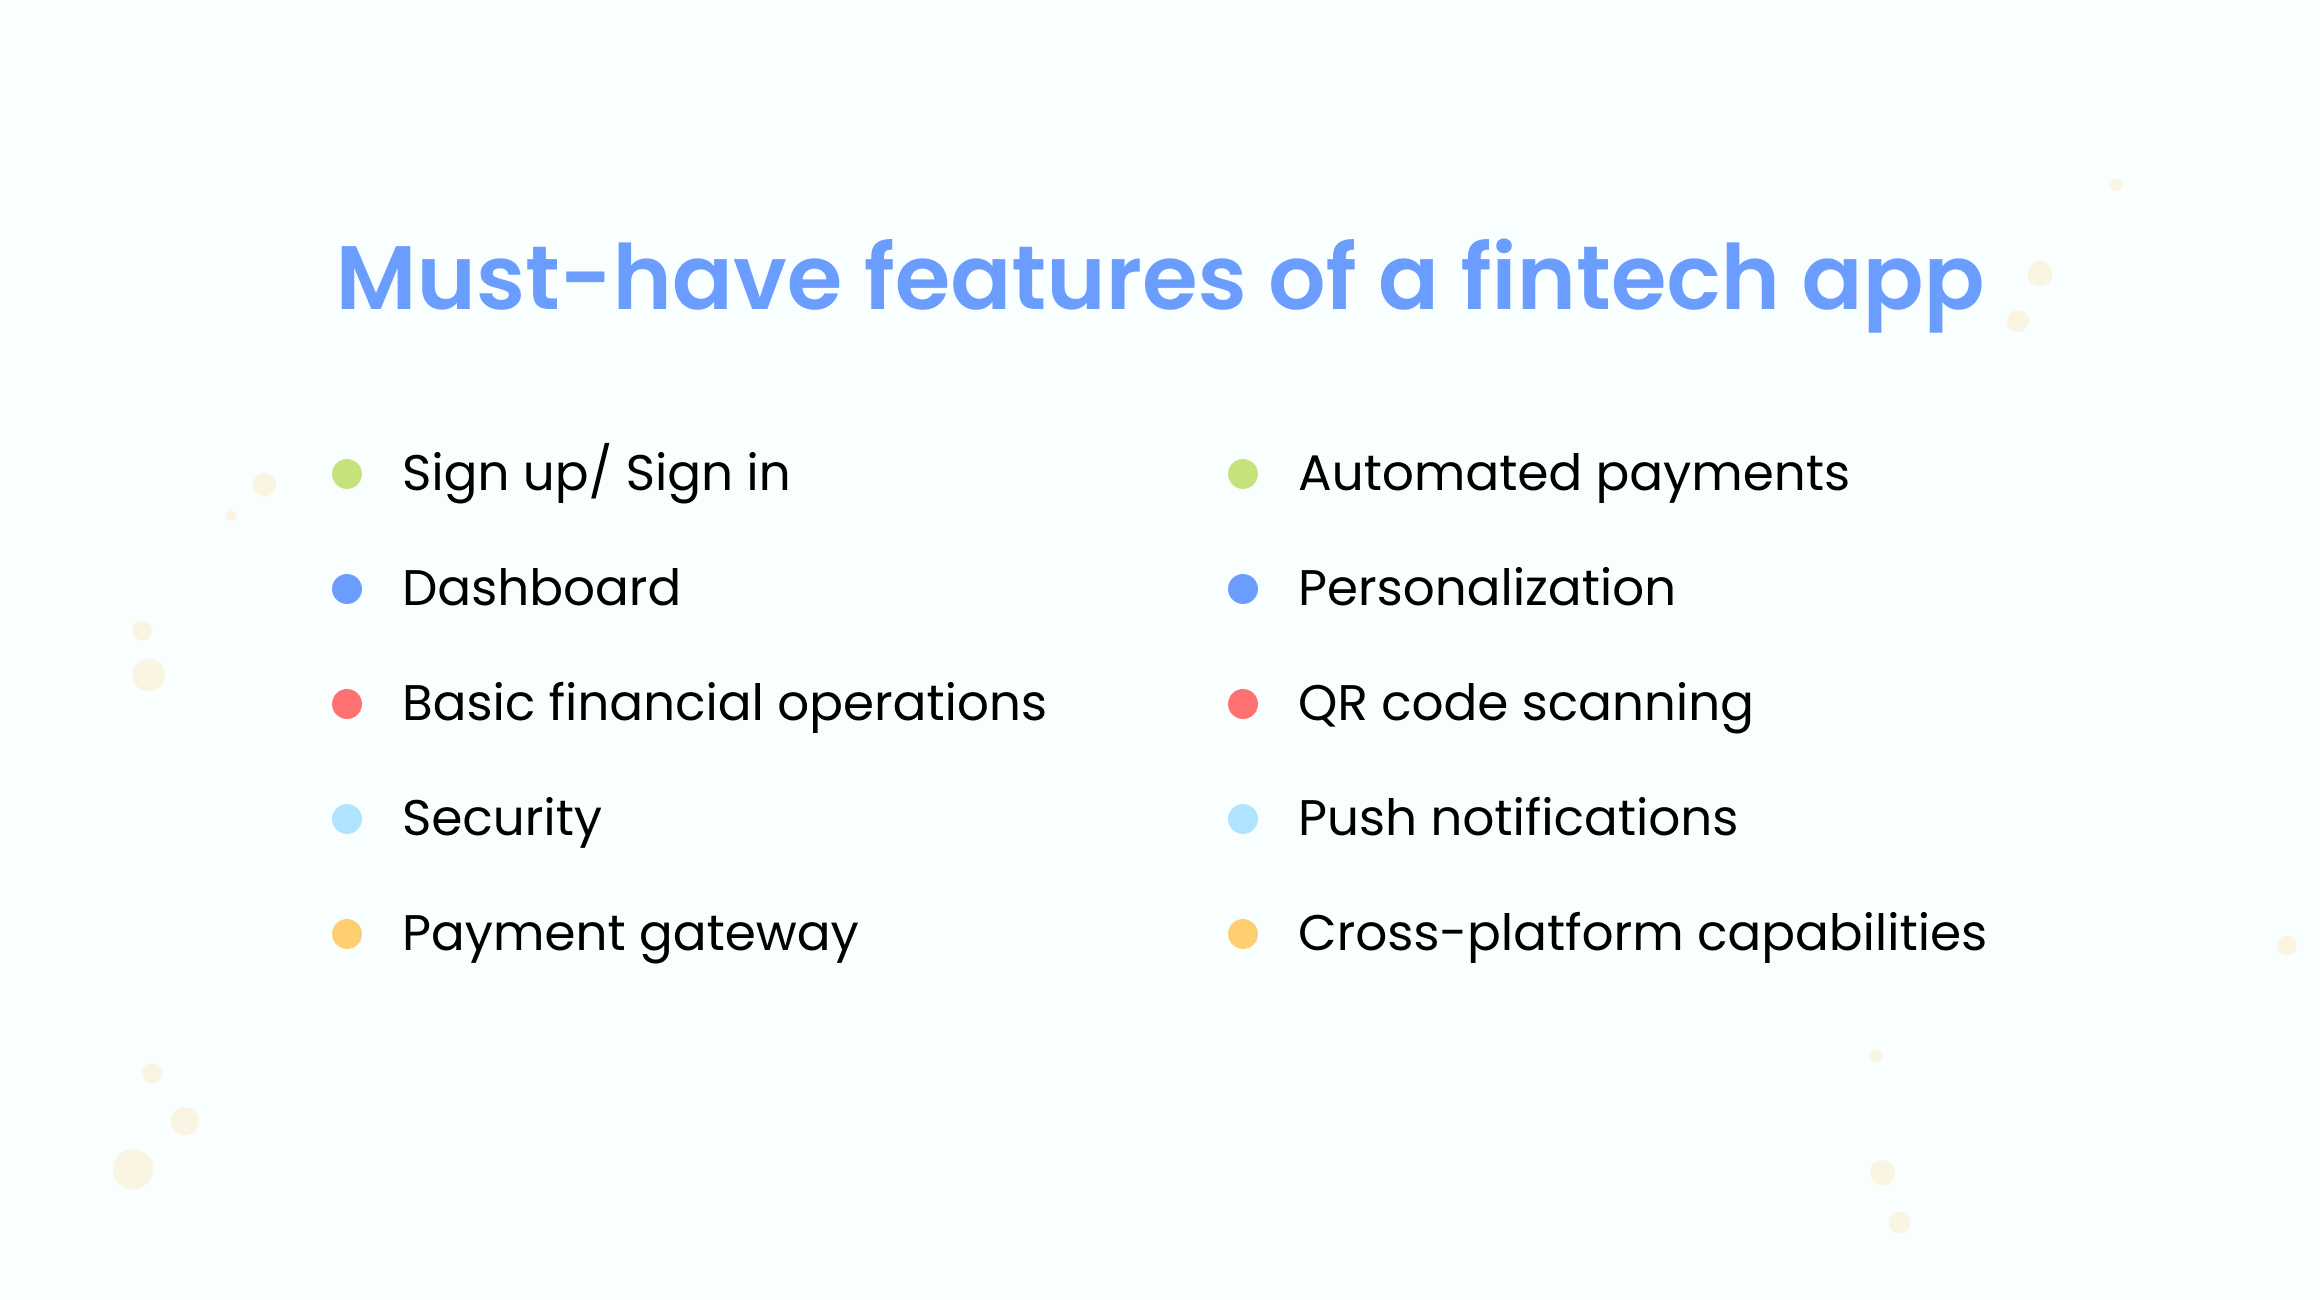 Features of a fintech app